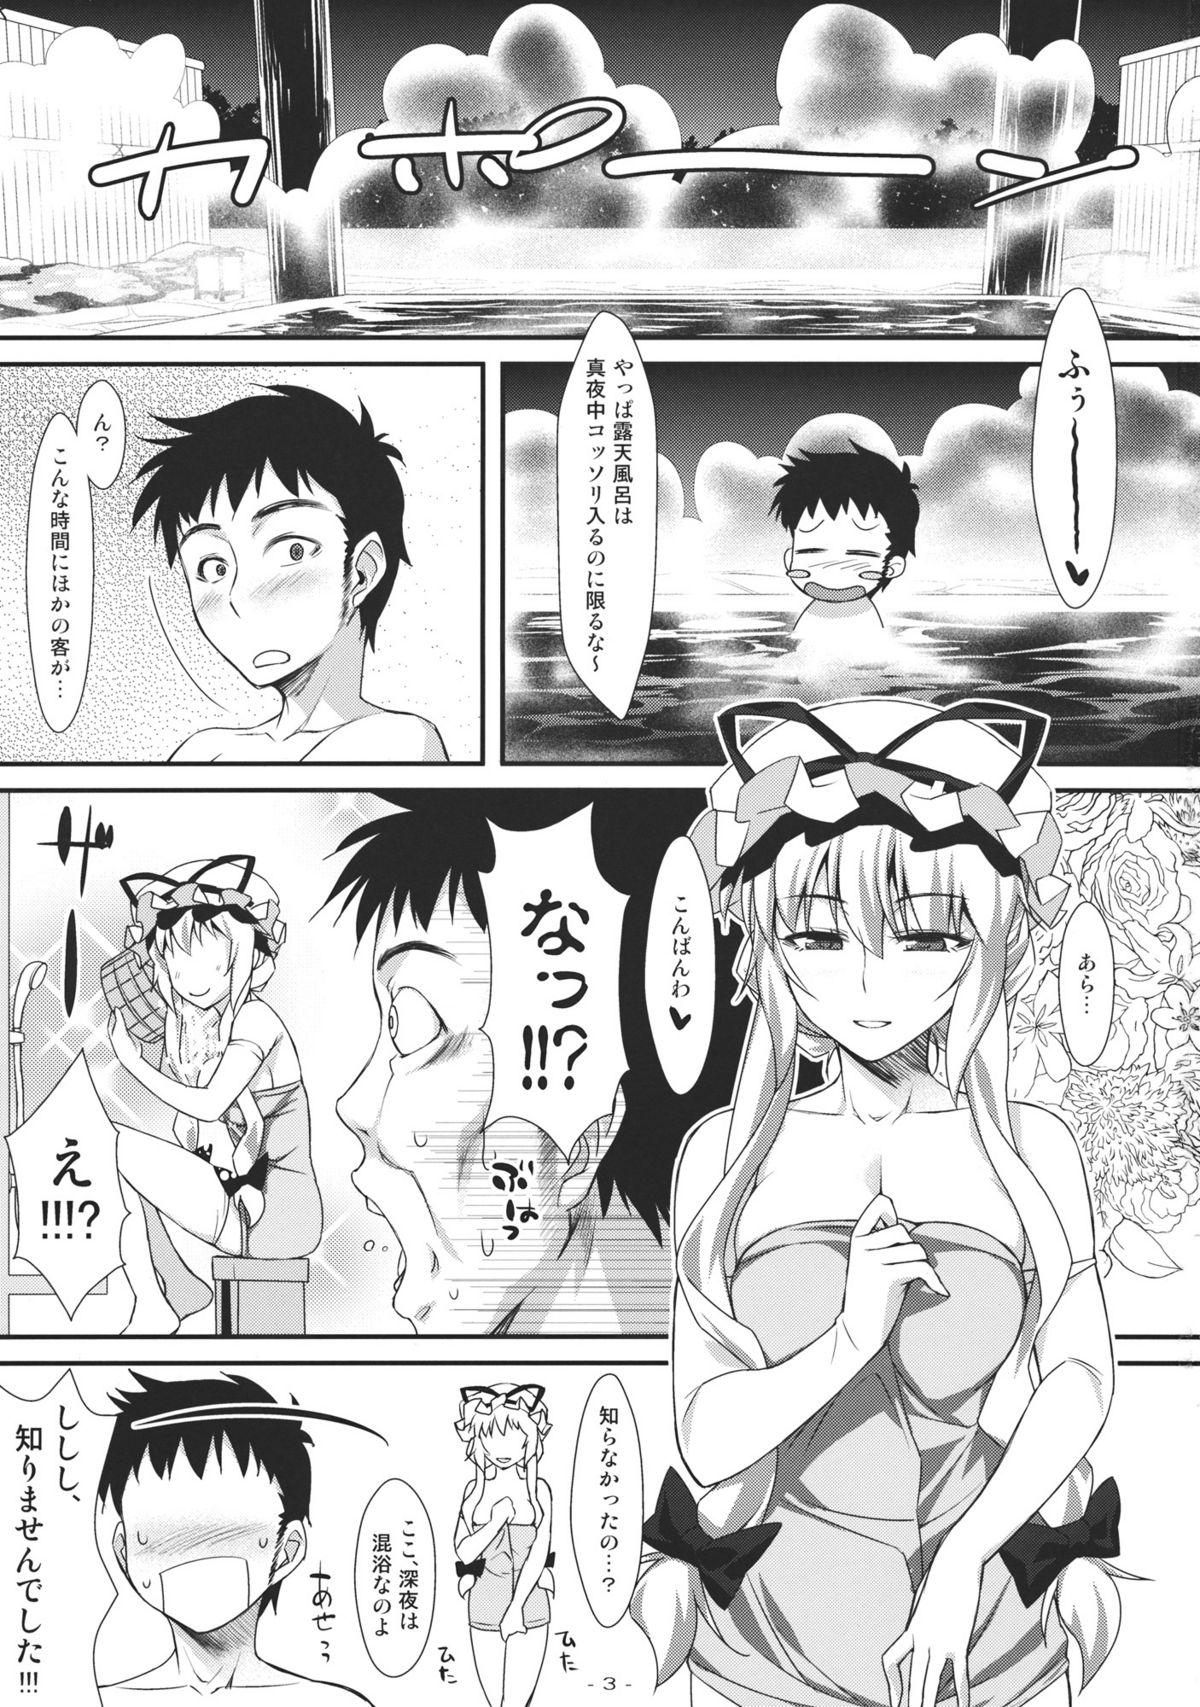 Orgia Yasei no Chijo ga Arawareta! 4 - Touhou project Pene - Page 3